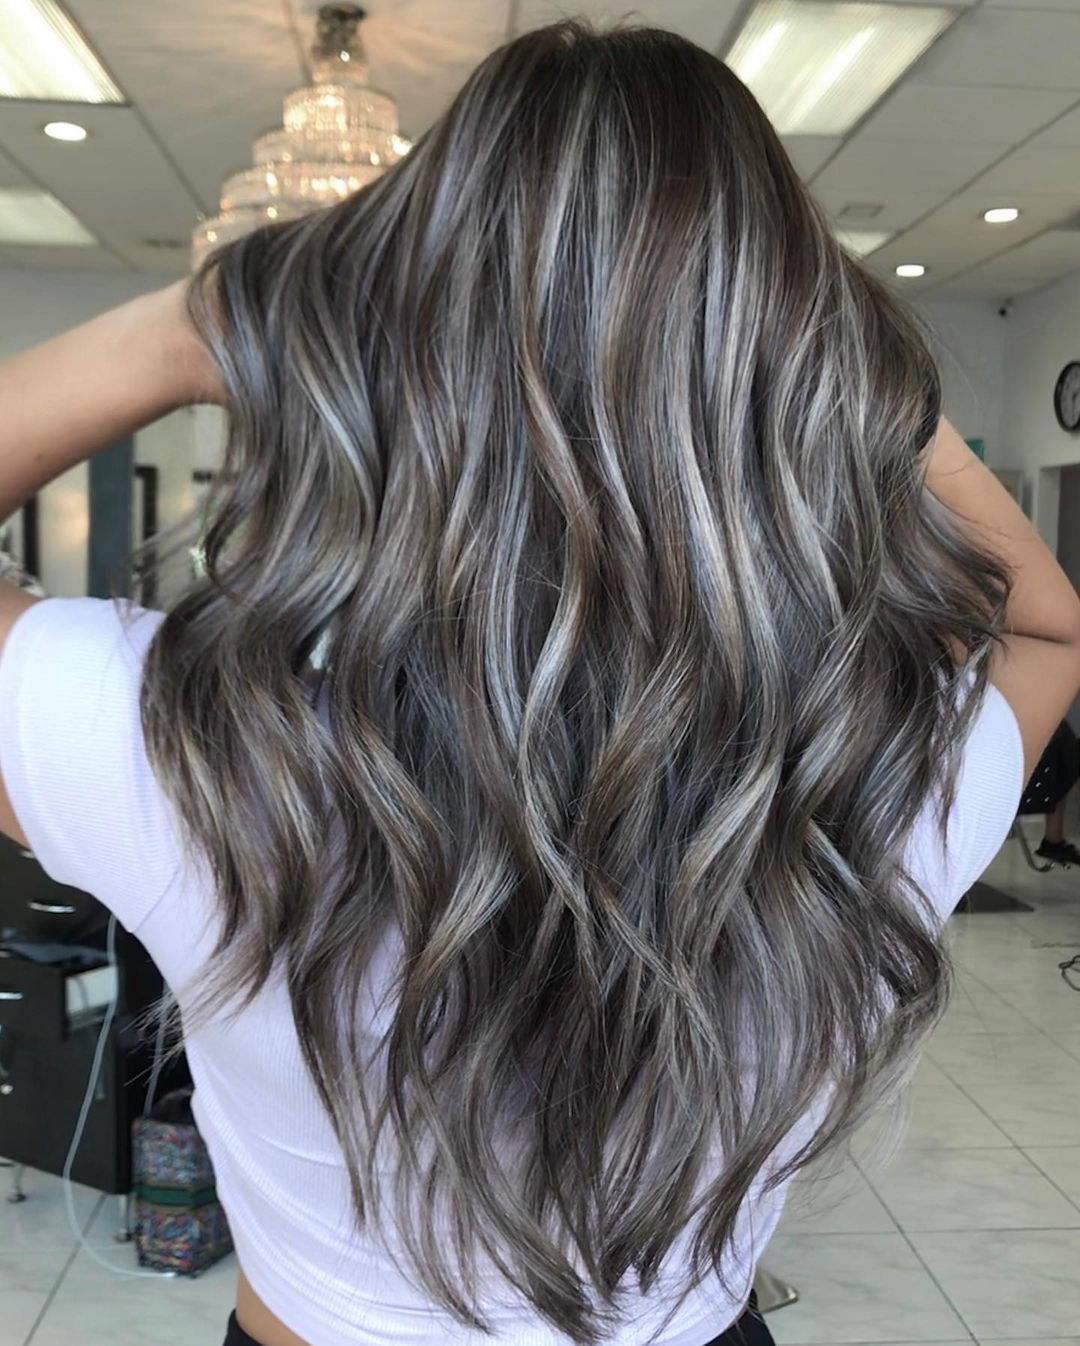 Warna rambut silver grey